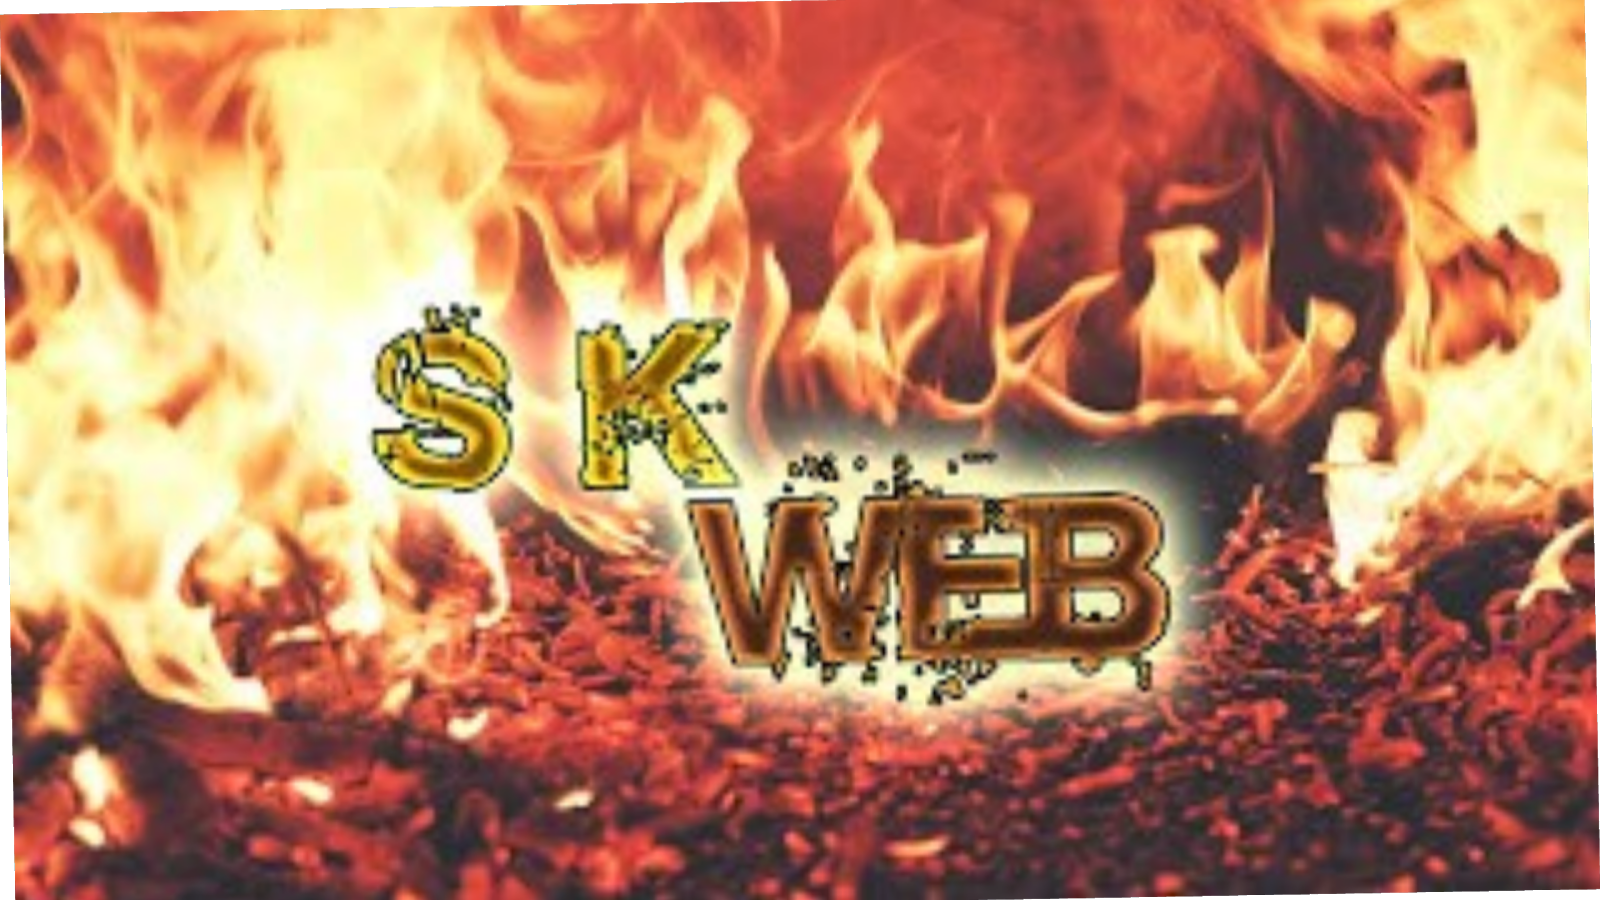 SHEKNAH WEB